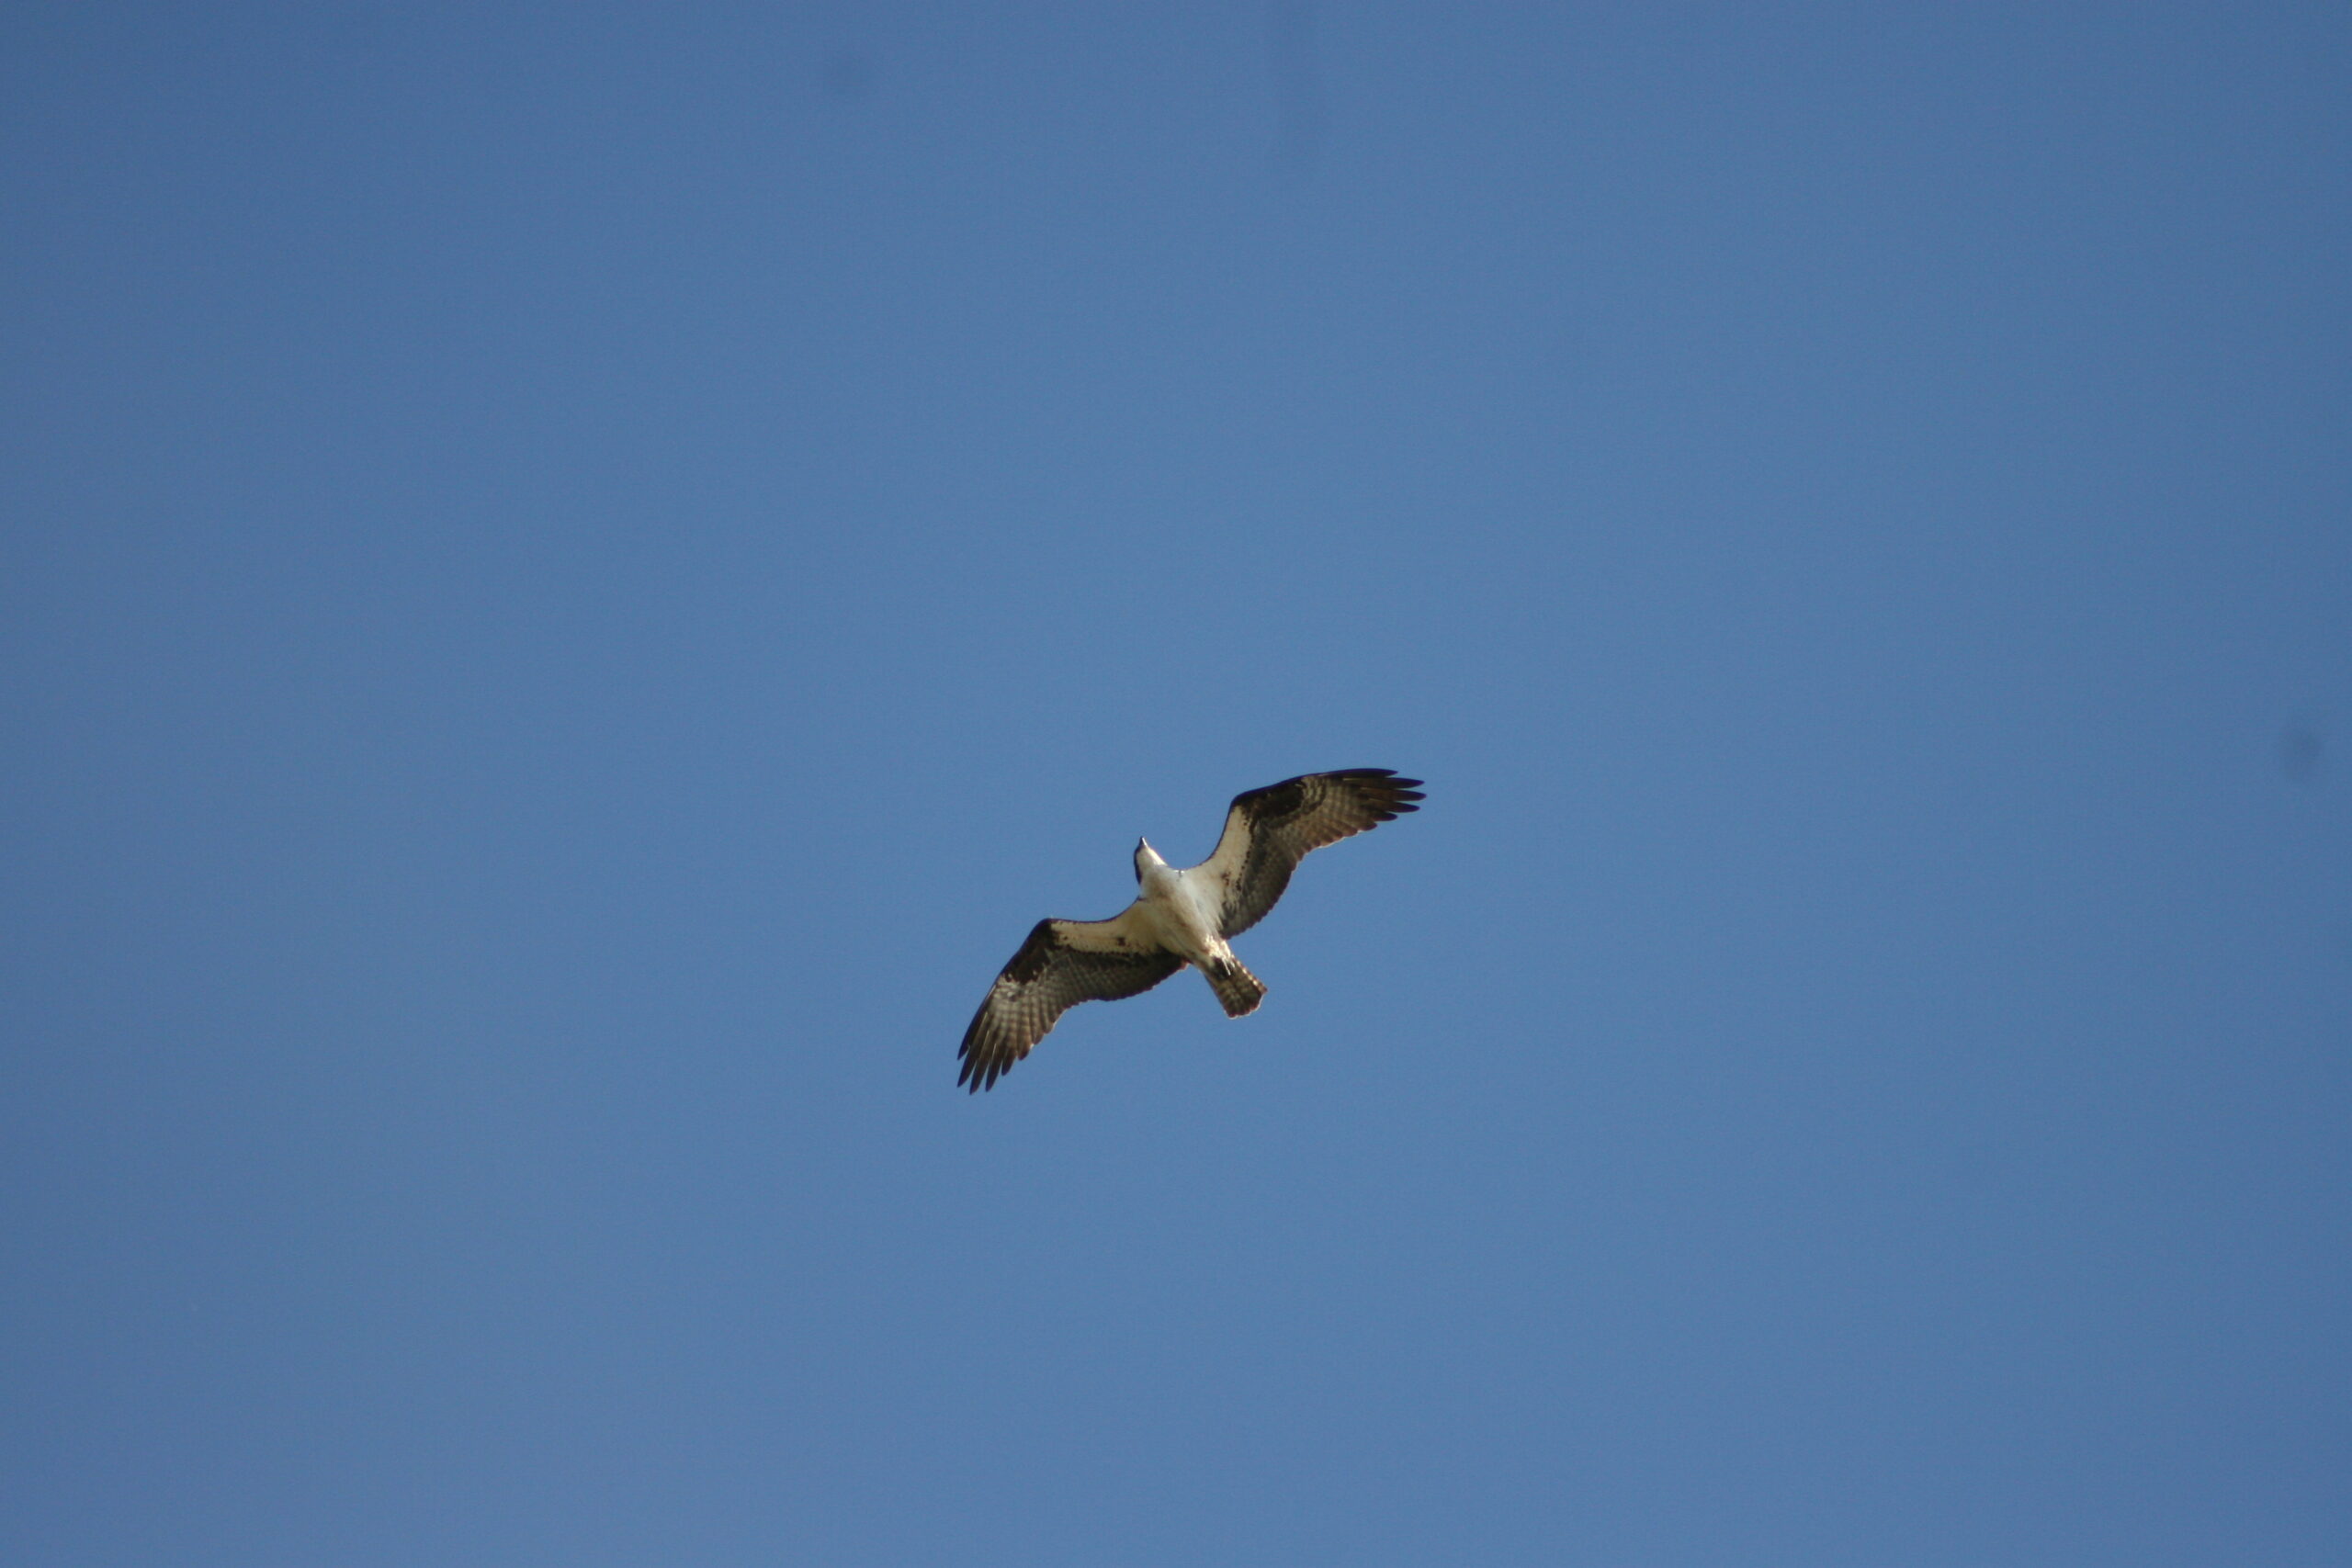 A bird soaring through a blue sky